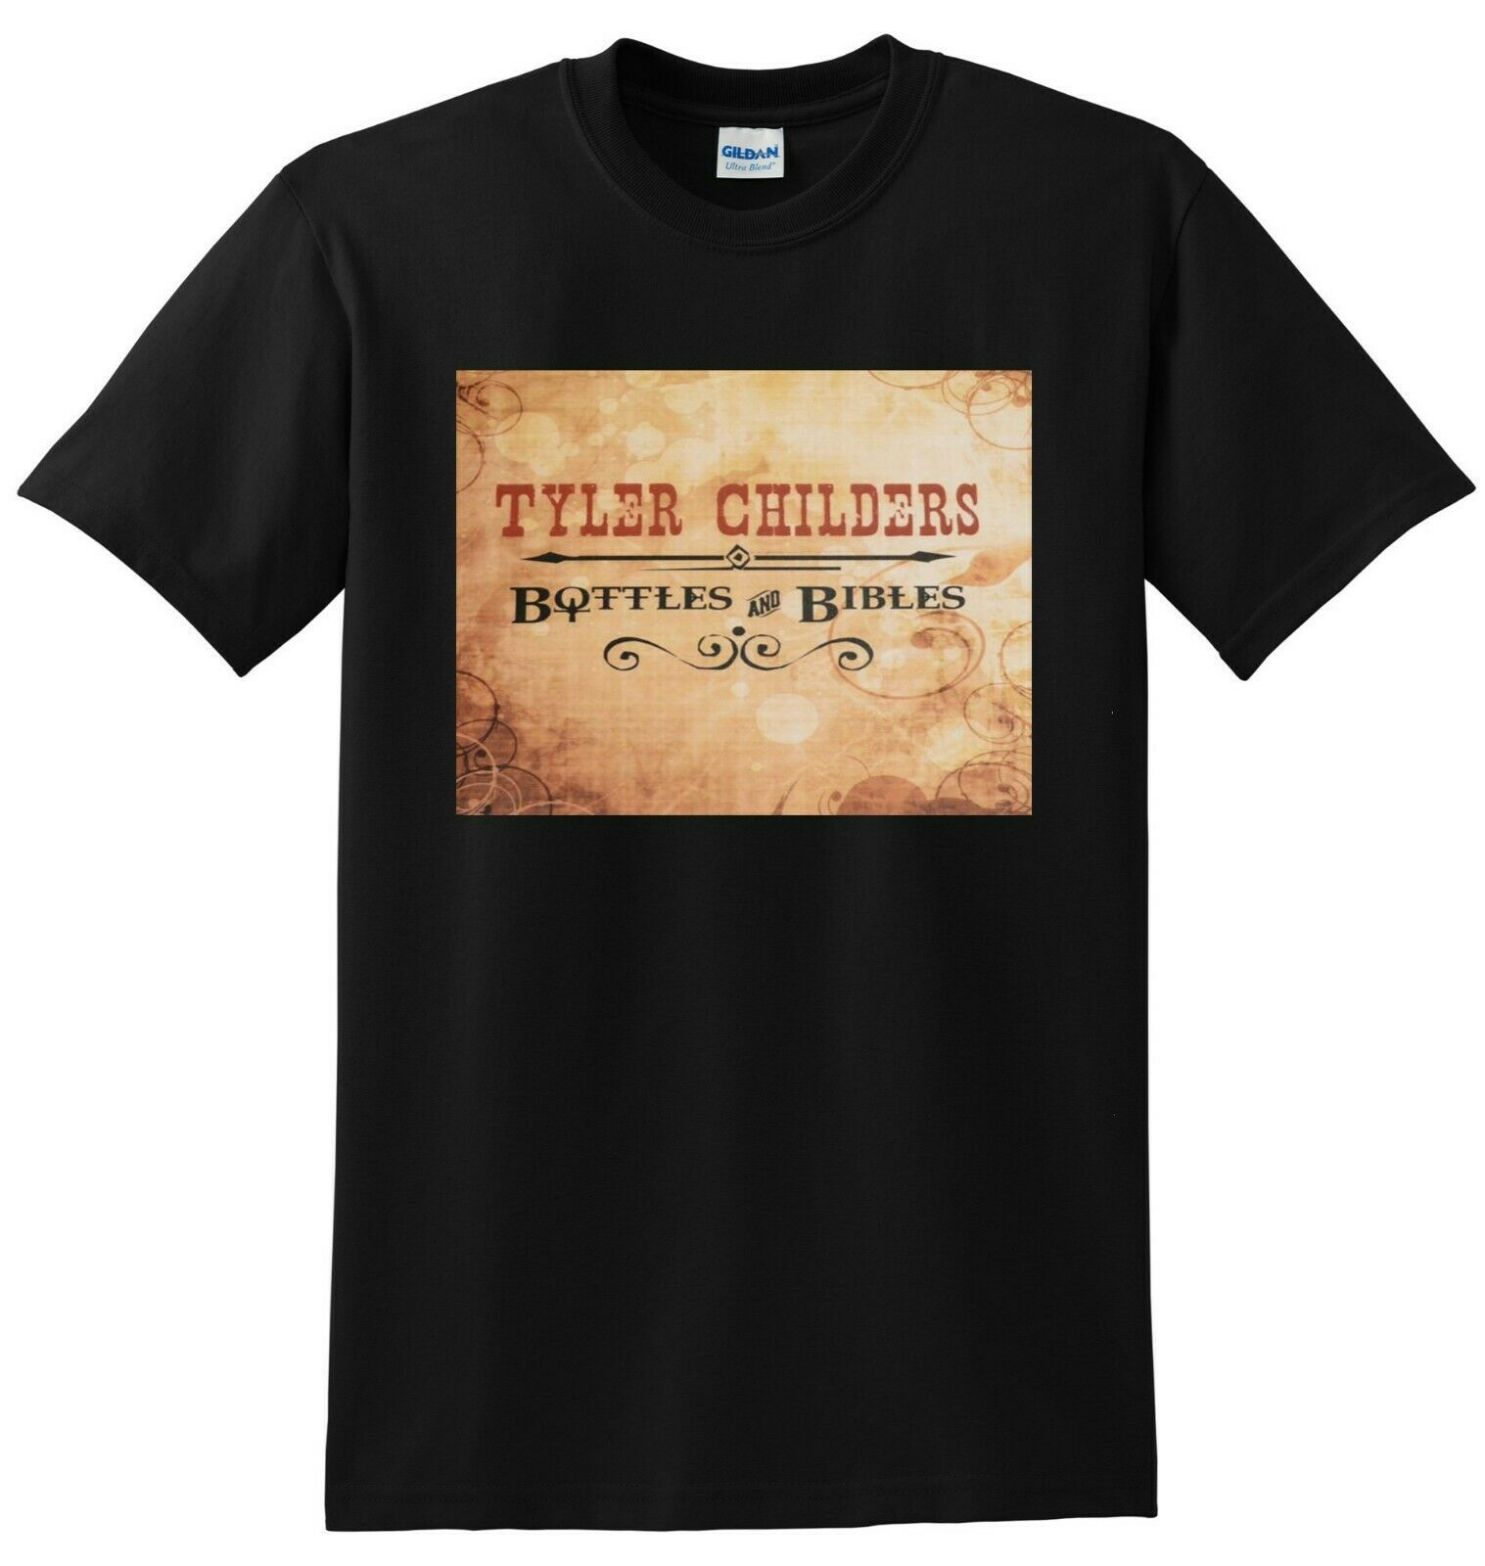 Tyler Childers Bottles And Bibles Vinyl Cd Cover Unisex T-Shirt